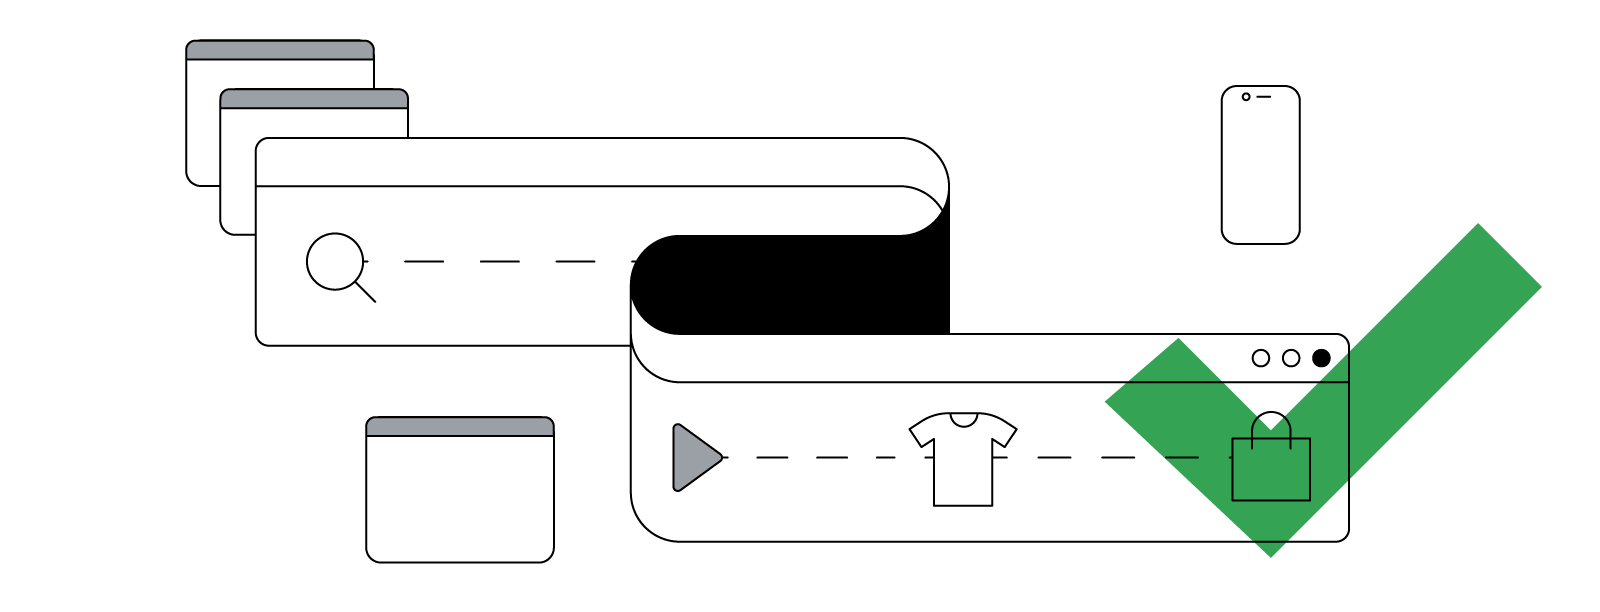 Ilustración abstracta de una ventana de navegador curva y flexible que representa el recorrido no lineal que sigue un cliente desde la búsqueda de información hasta la compra en distintos dispositivos.